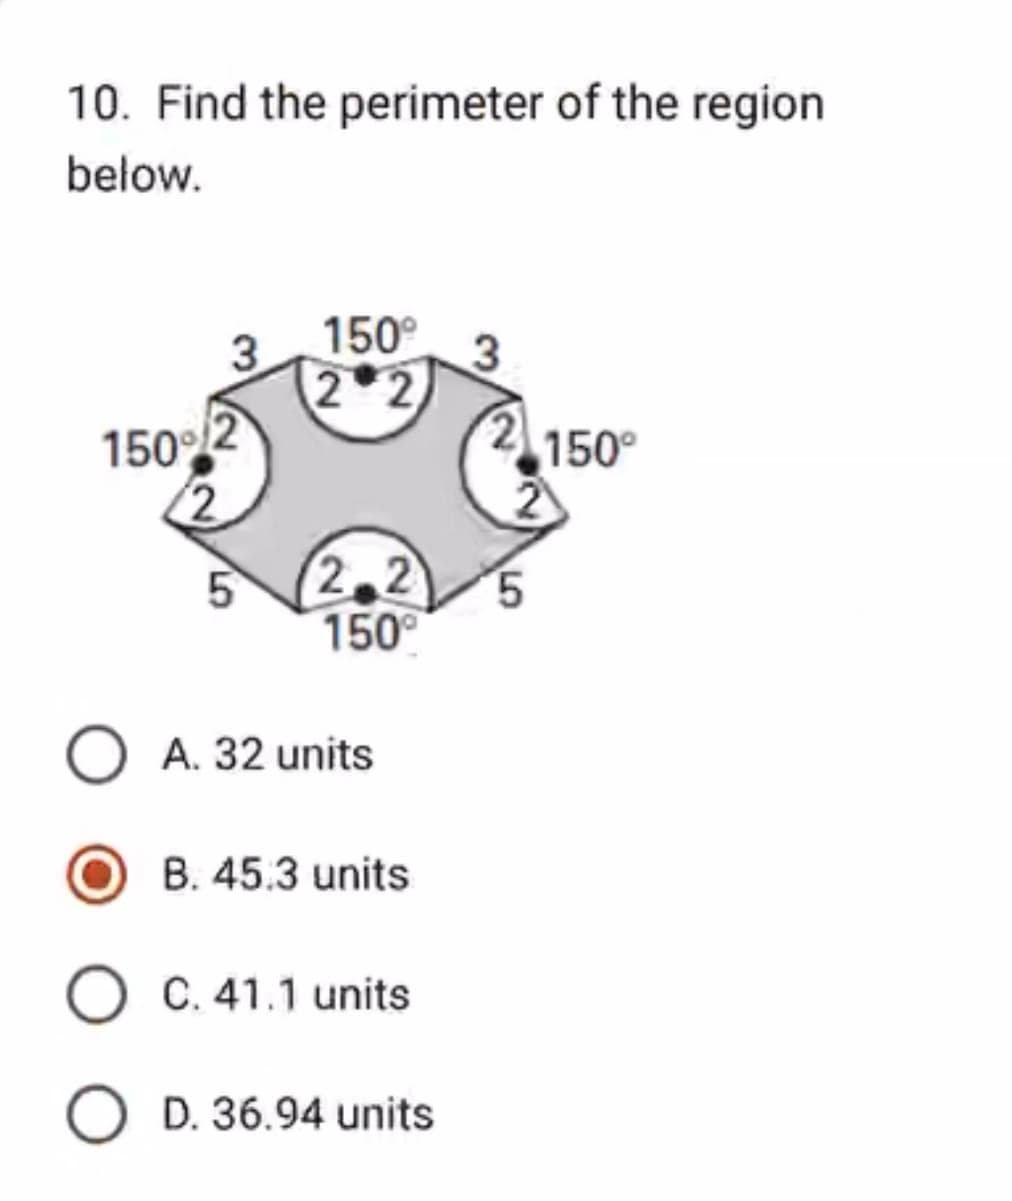 10. Find the perimeter of the region
below.
150%
5
150°
2
2.2
150°
O A. 32 units
B. 45.3 units
O C. 41.1 units
O D. 36.94 units
3
150°